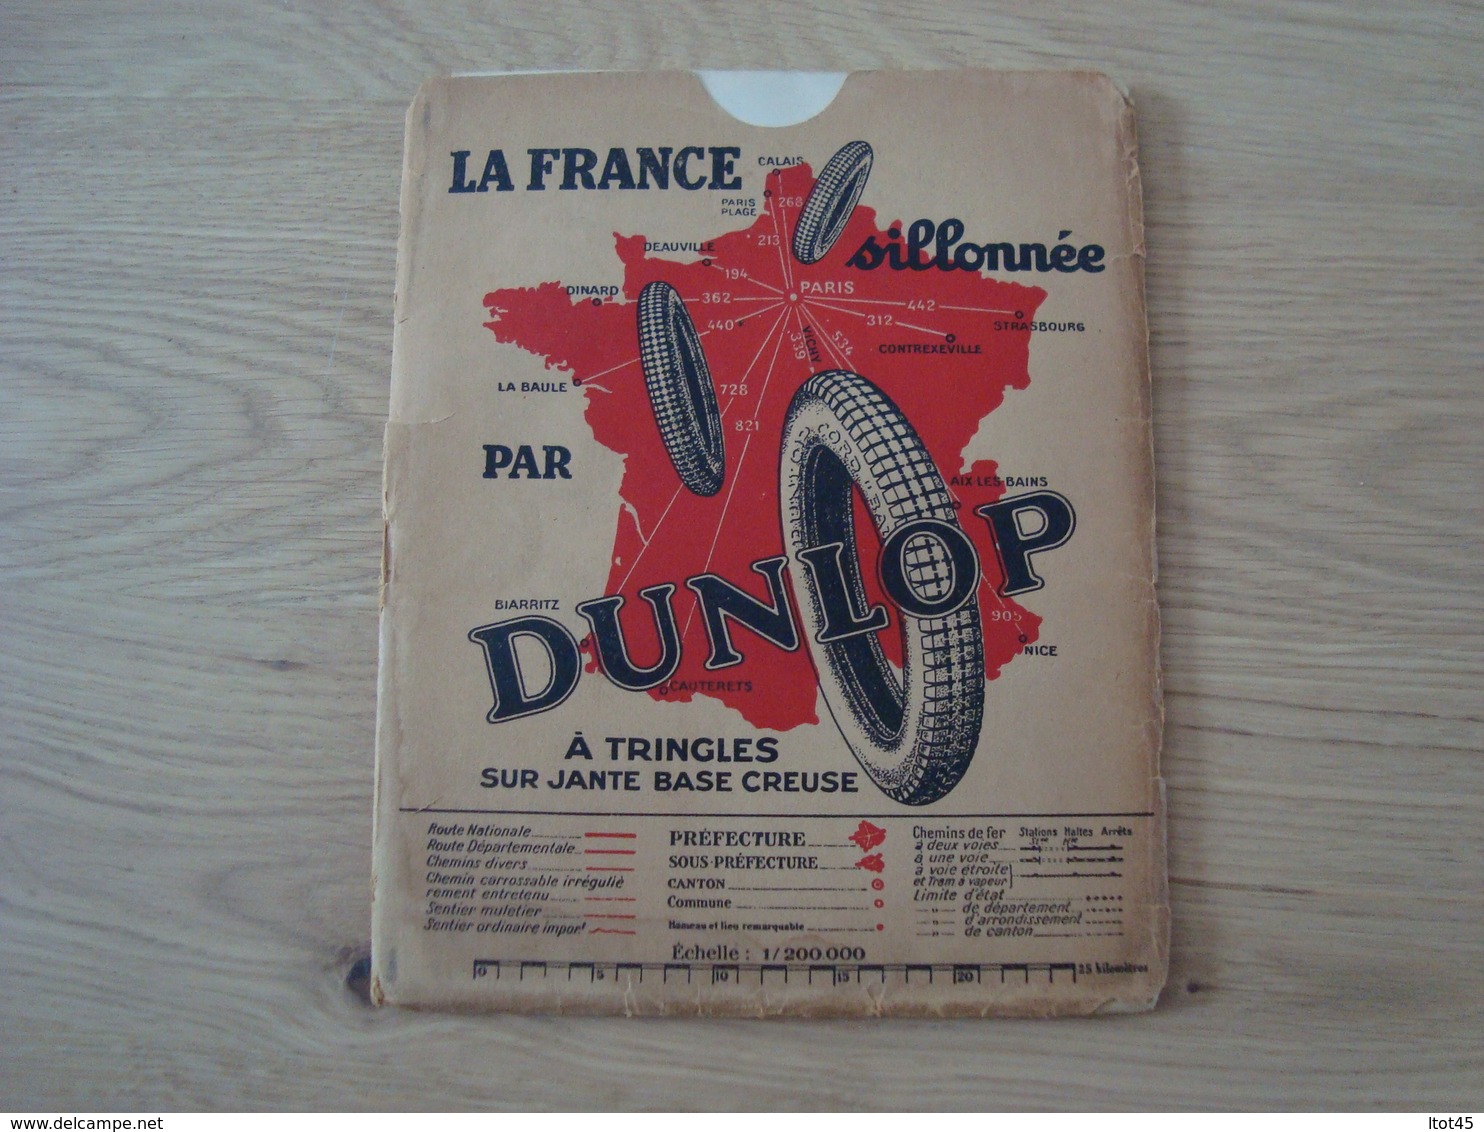 CARTE ROUTIERE DUNLOP JUILLET 1930 LA COTE VENDEENNE - Cartes Routières